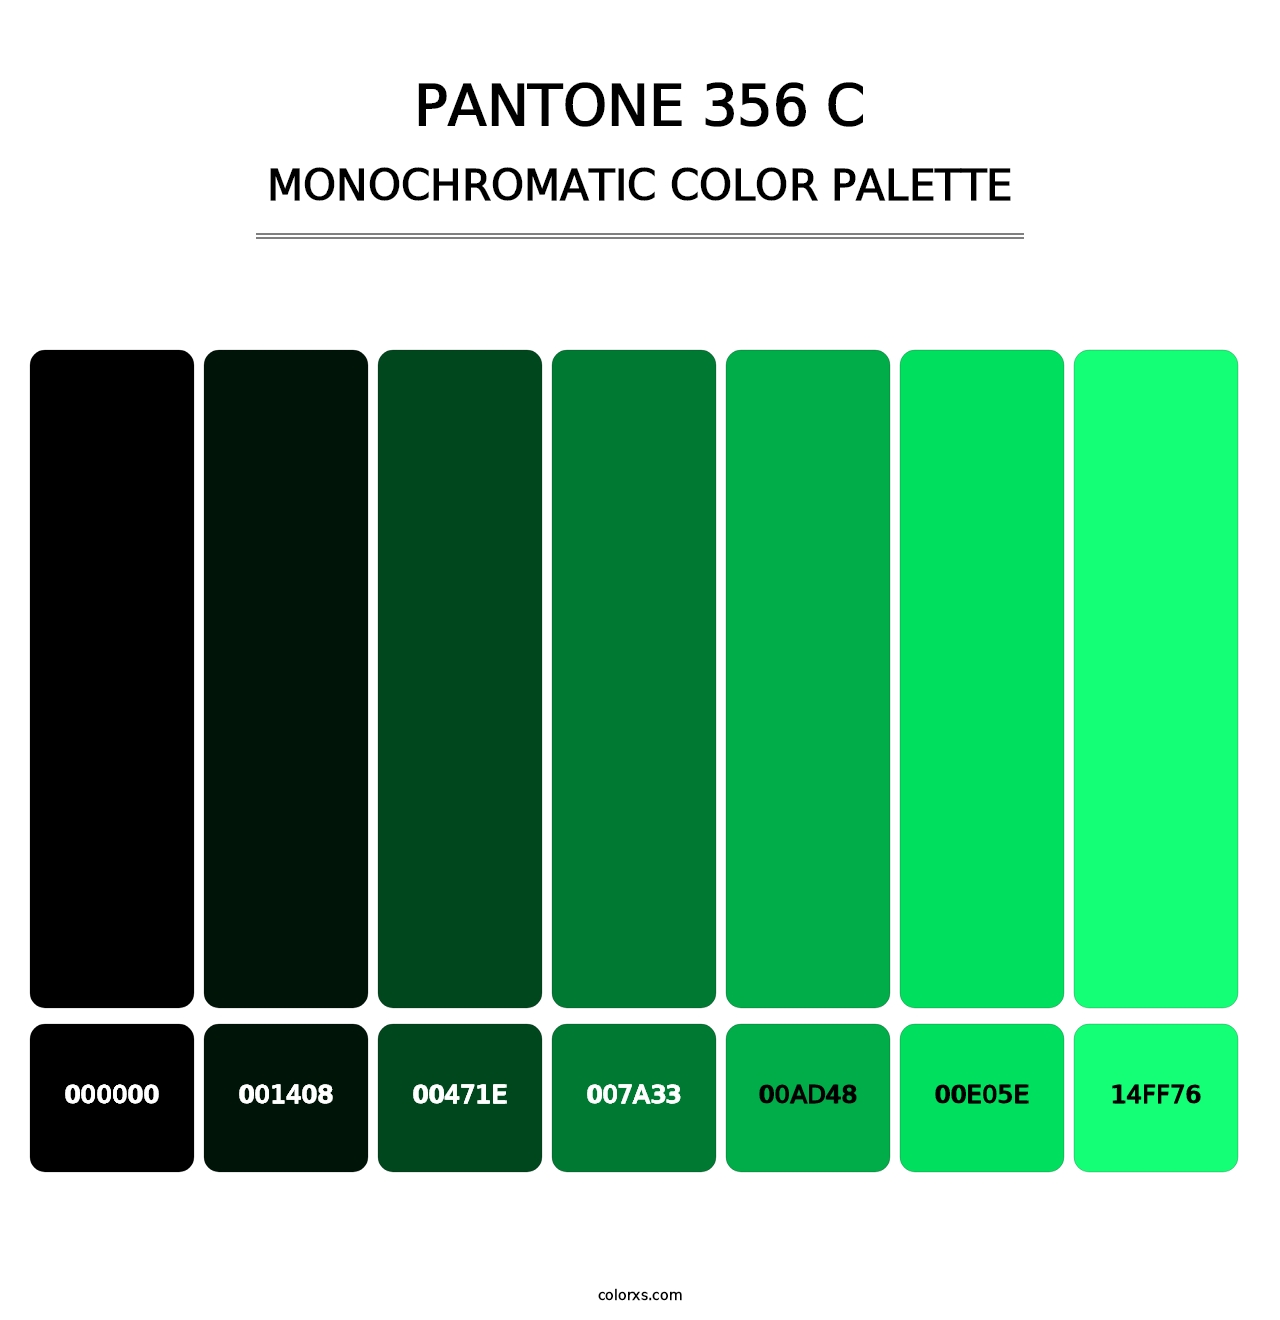 PANTONE 356 C - Monochromatic Color Palette